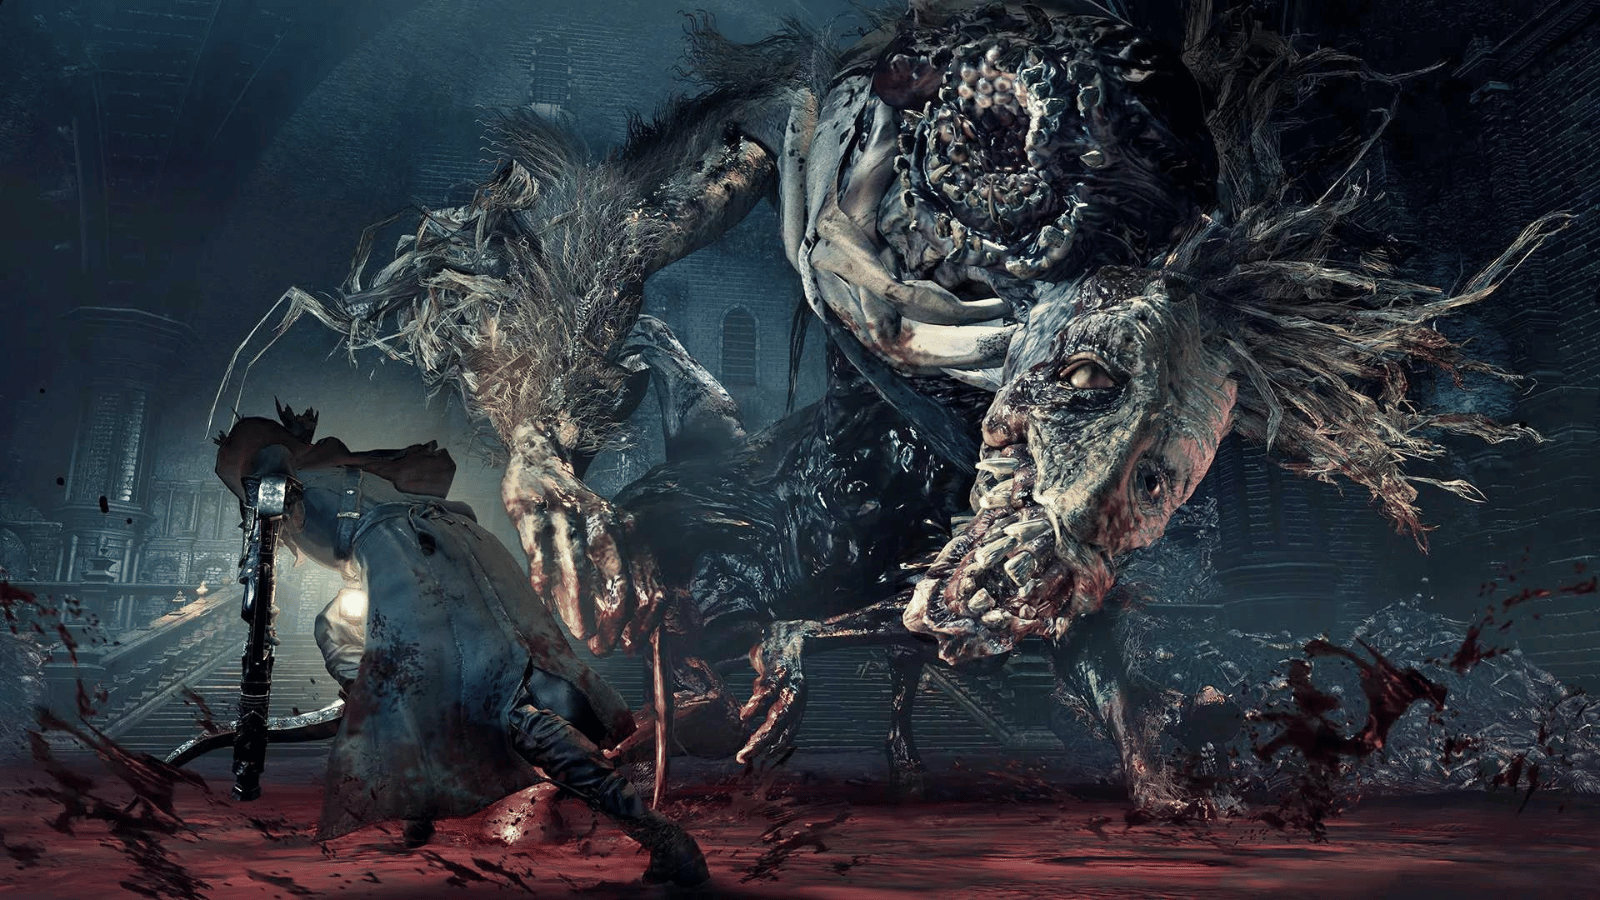 Bloodborne image (LS: Grok)